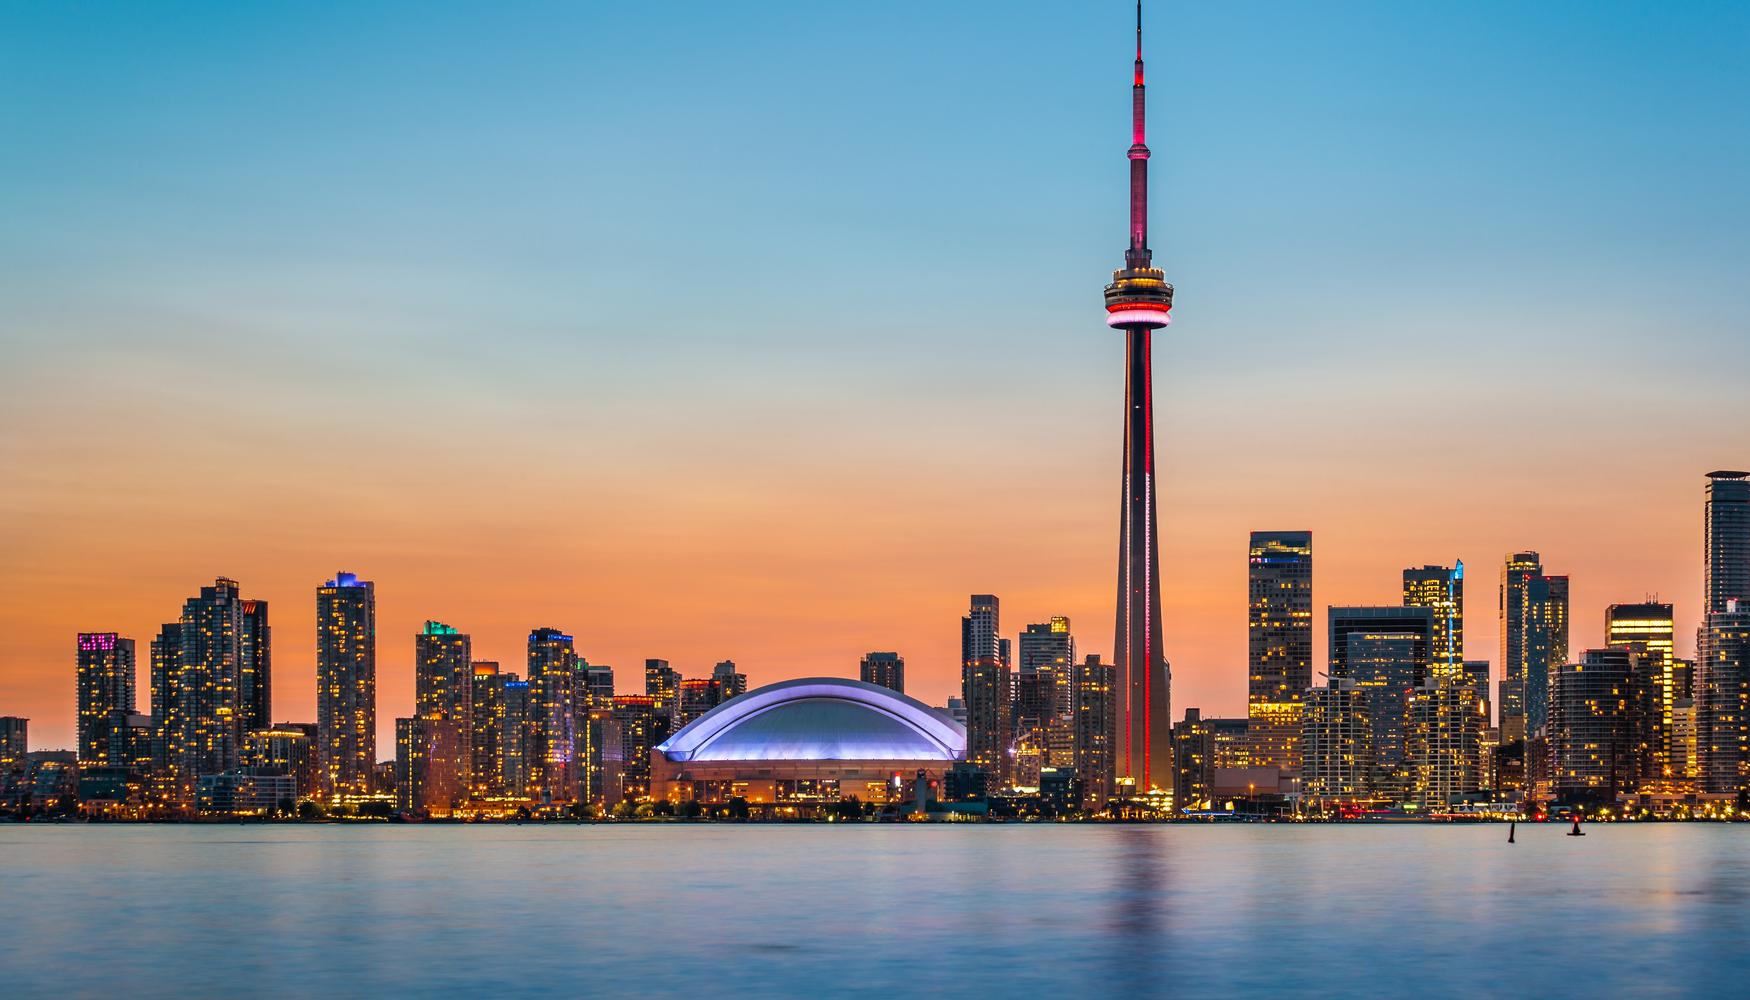 Skyline desde el mar de Toronto al atardecer con los edificios iluminados, donde sobre sale la altura de la Torre CN